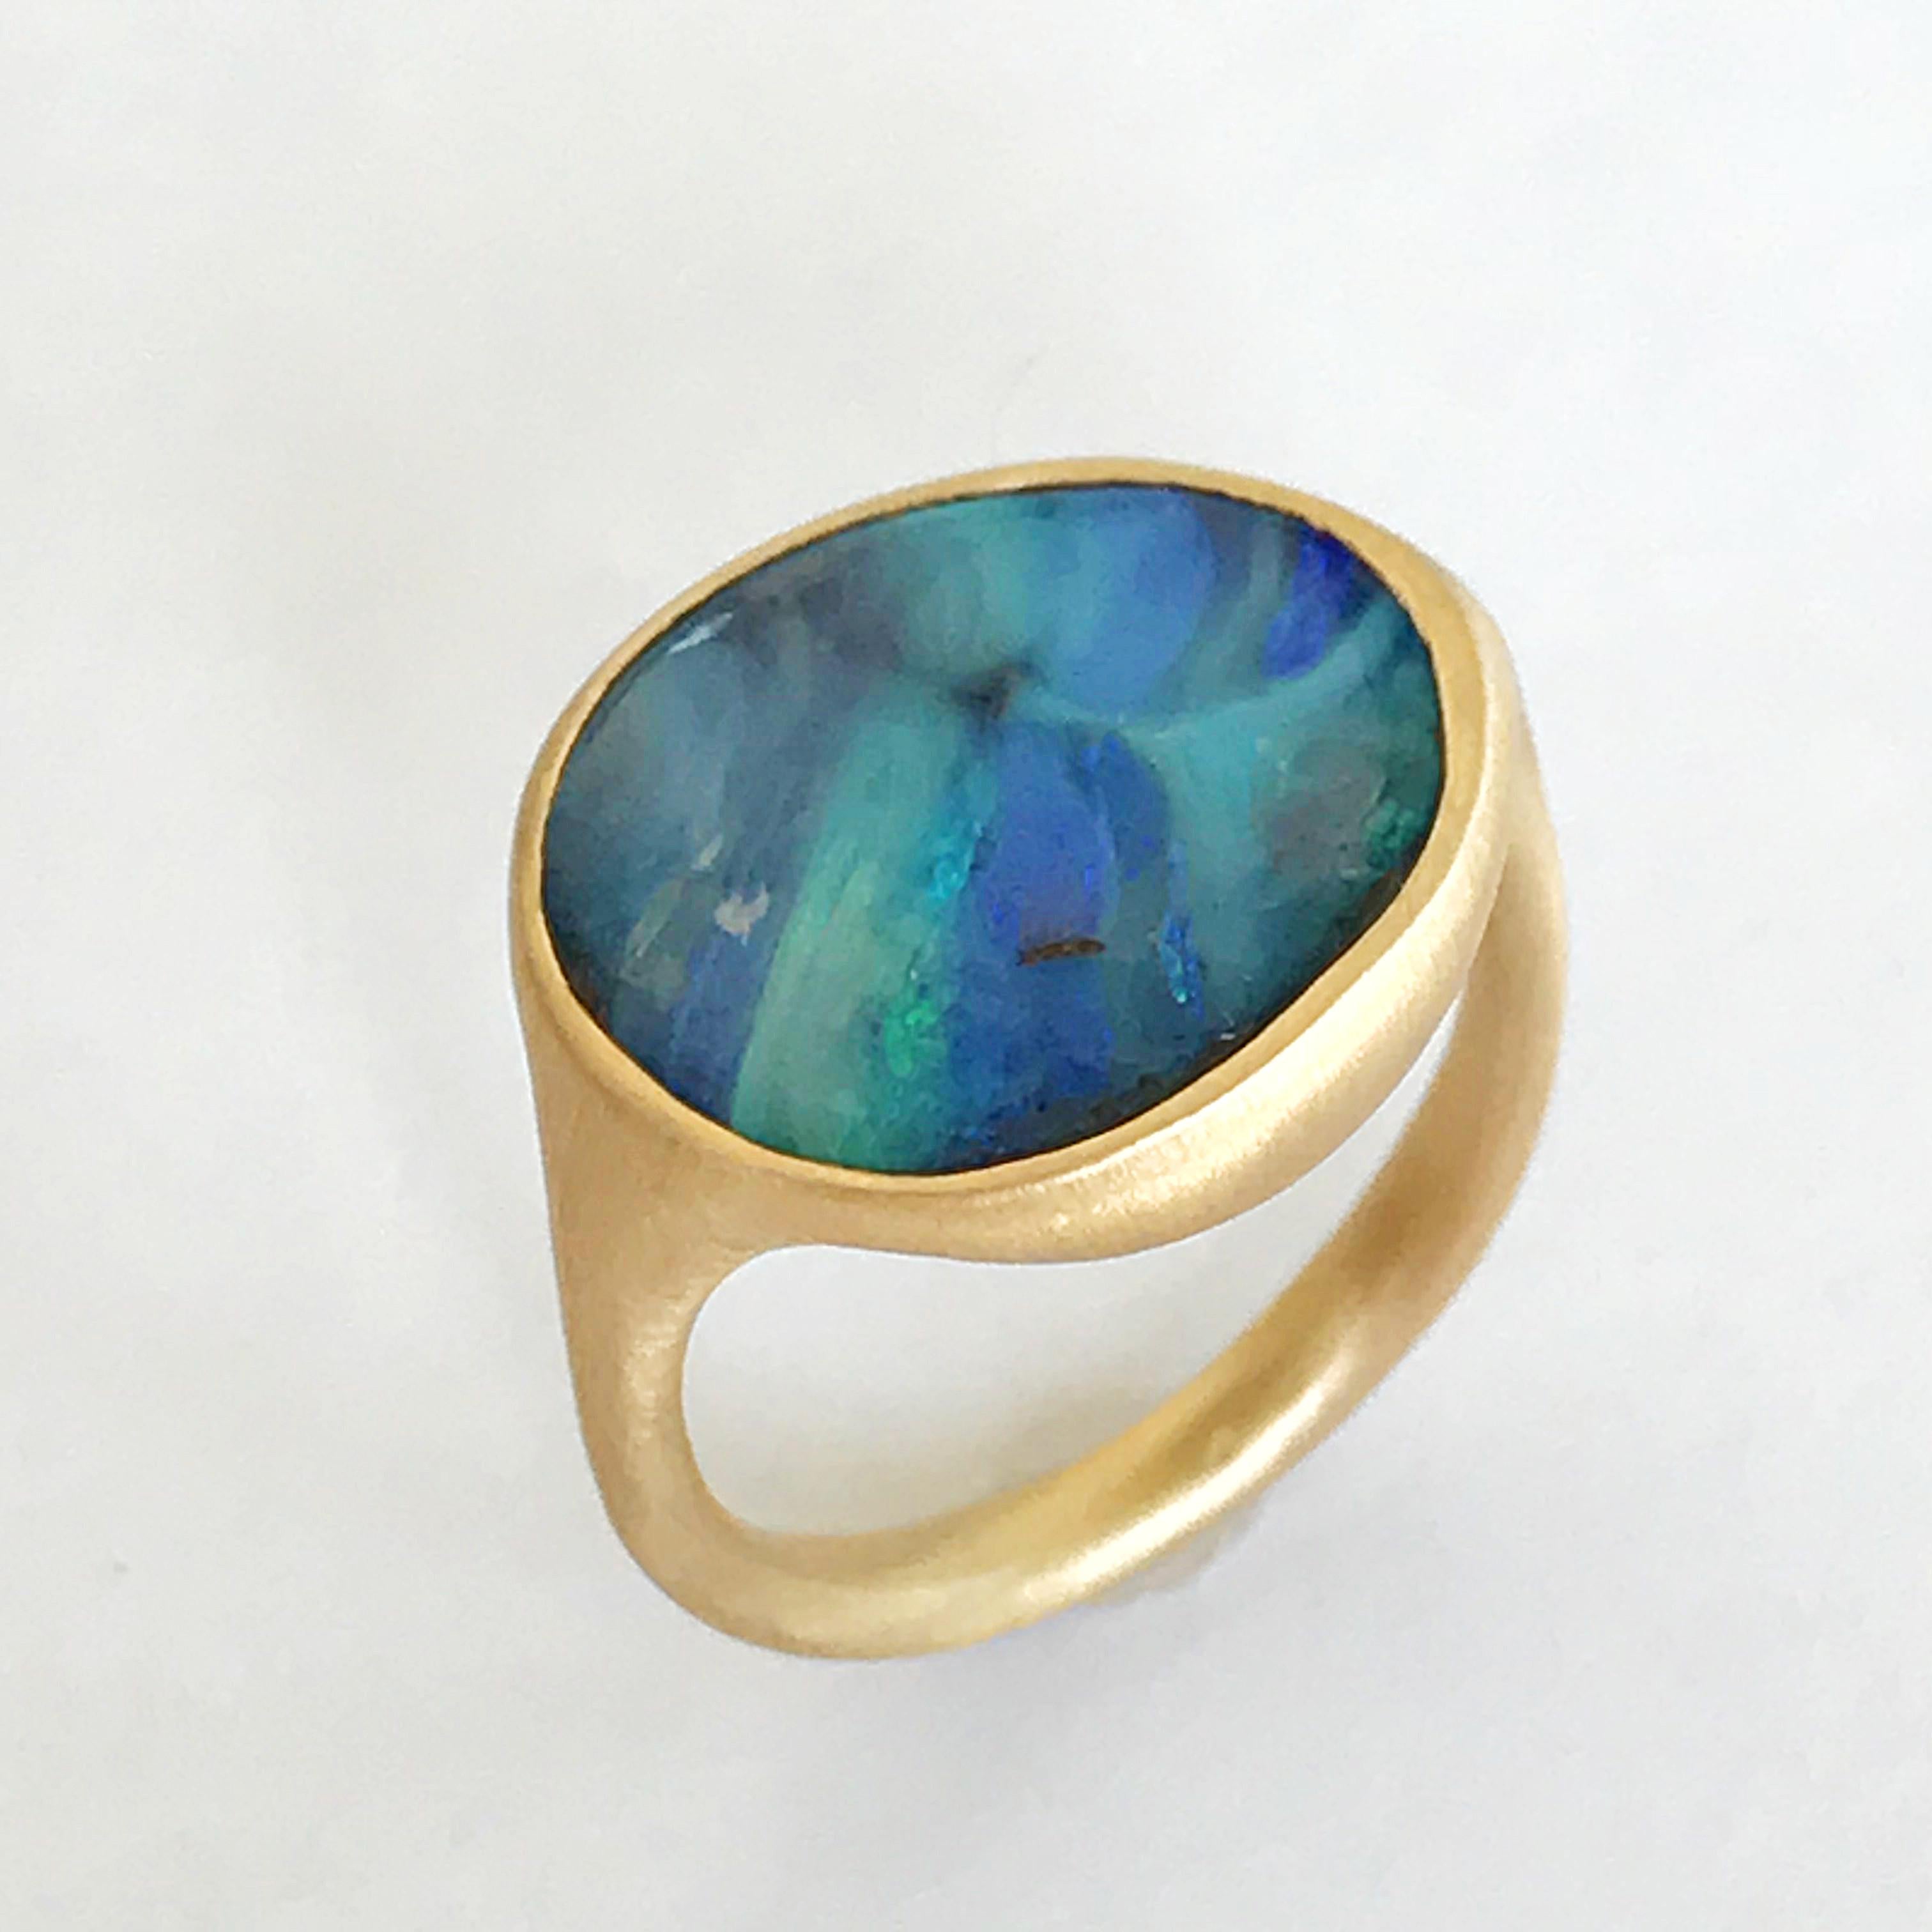 Dalben design Einzigartiger Ring aus 18 kt Gelbgold mit einem 6,8 Karat blauen Stein in Lünettenform Australischer Boulder Opal  .  
Ring Größe 6  - EU 52 größenveränderlich .  
Lünette Einstellung Dimension:  
maximale Breite 17,6 mm,  
maximale